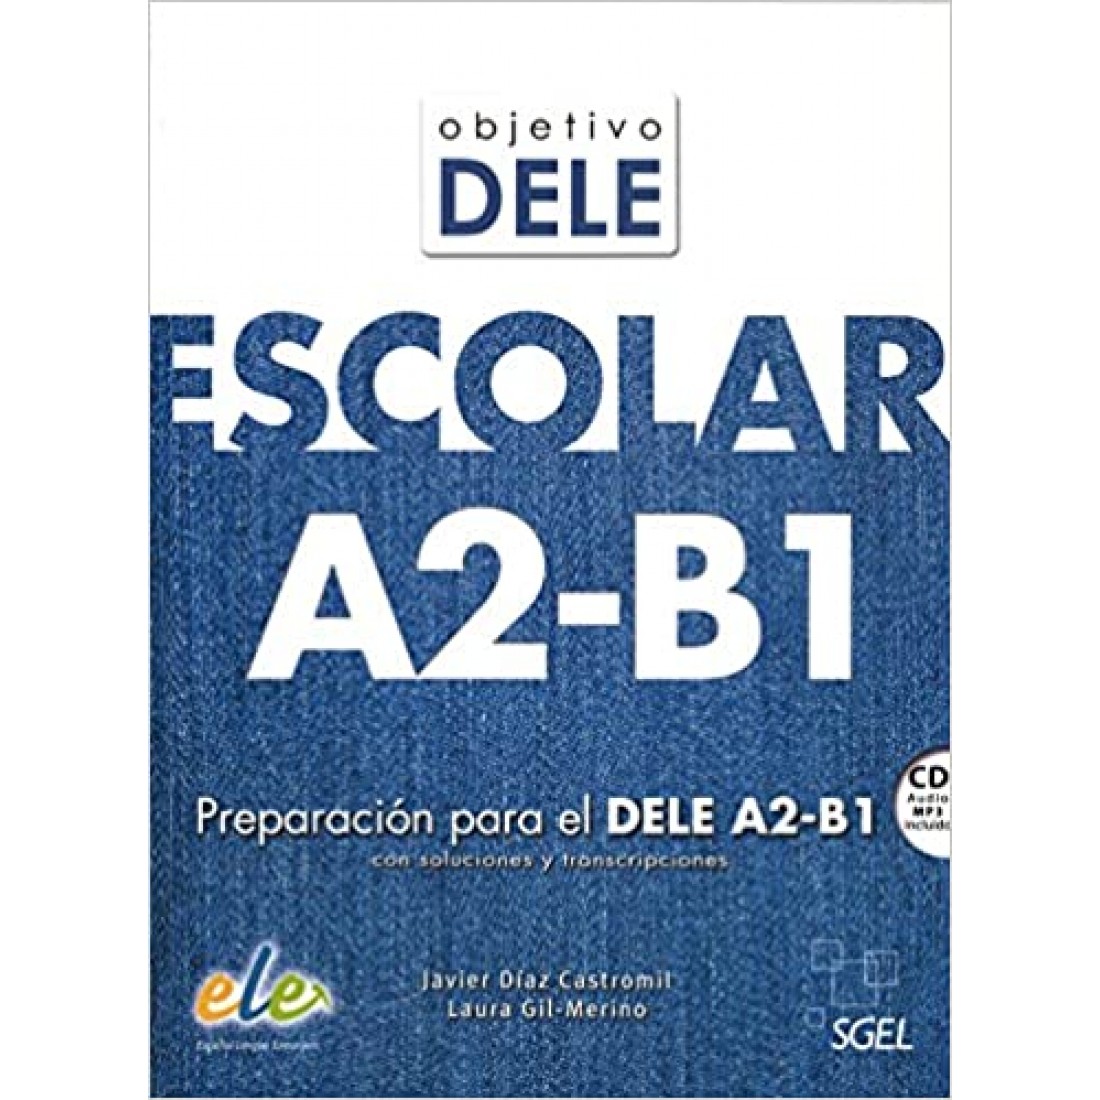 Objetivo DELE Escolar A2-B1: Preparacion Para el Dele A2-B1 Con Soluciones  y Transcripciones